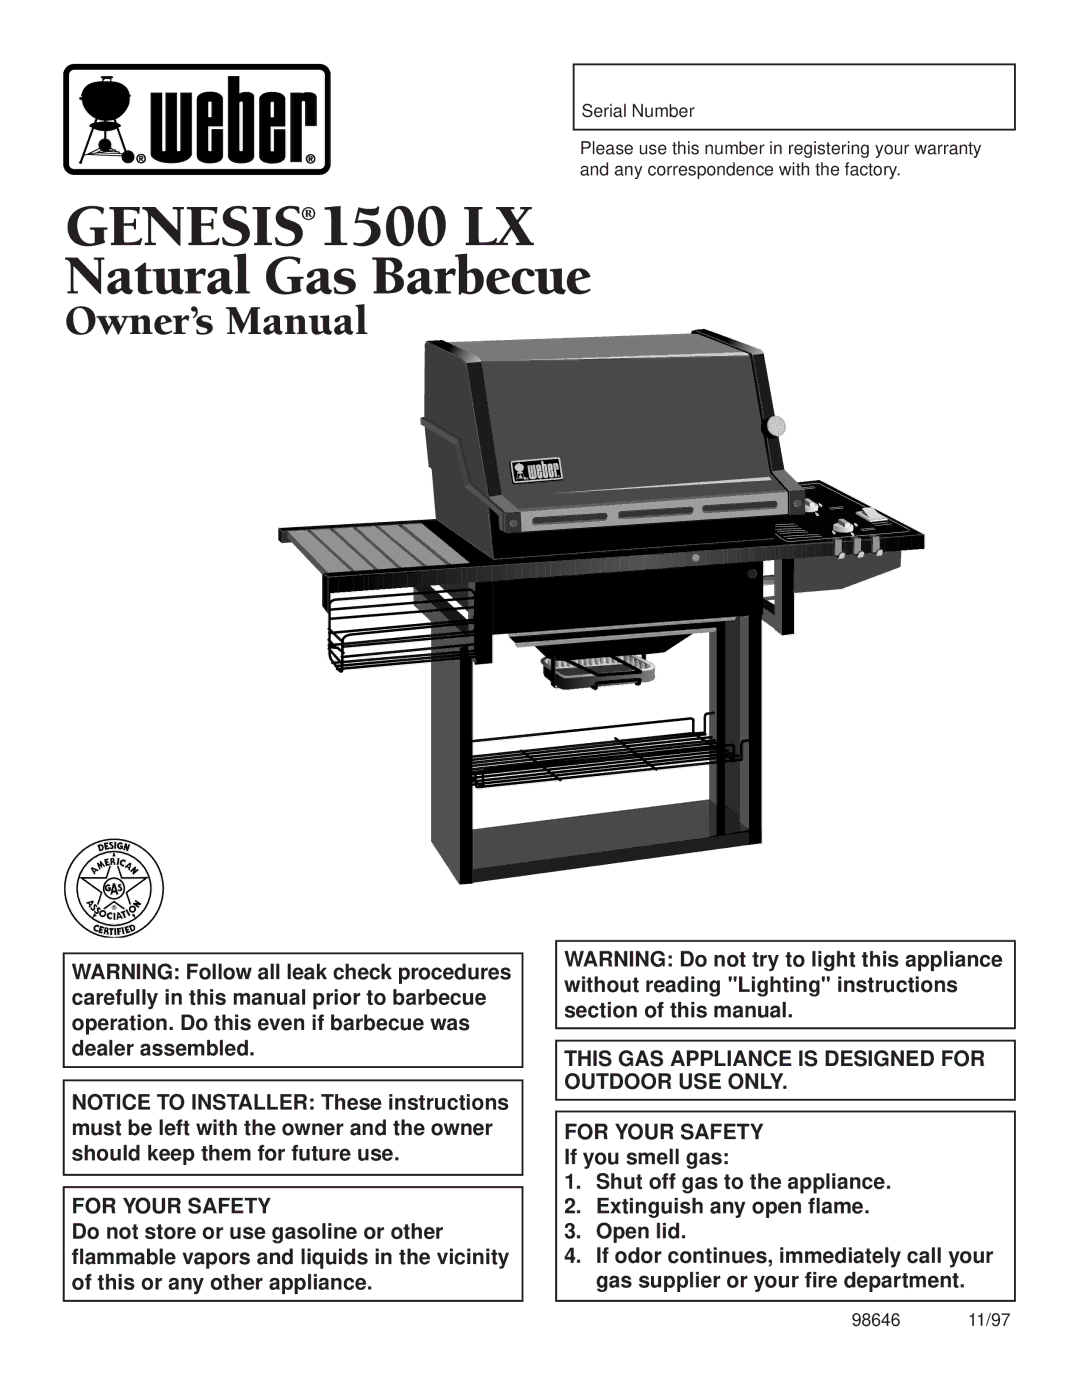 Weber owner manual Genesis 1500 LX 